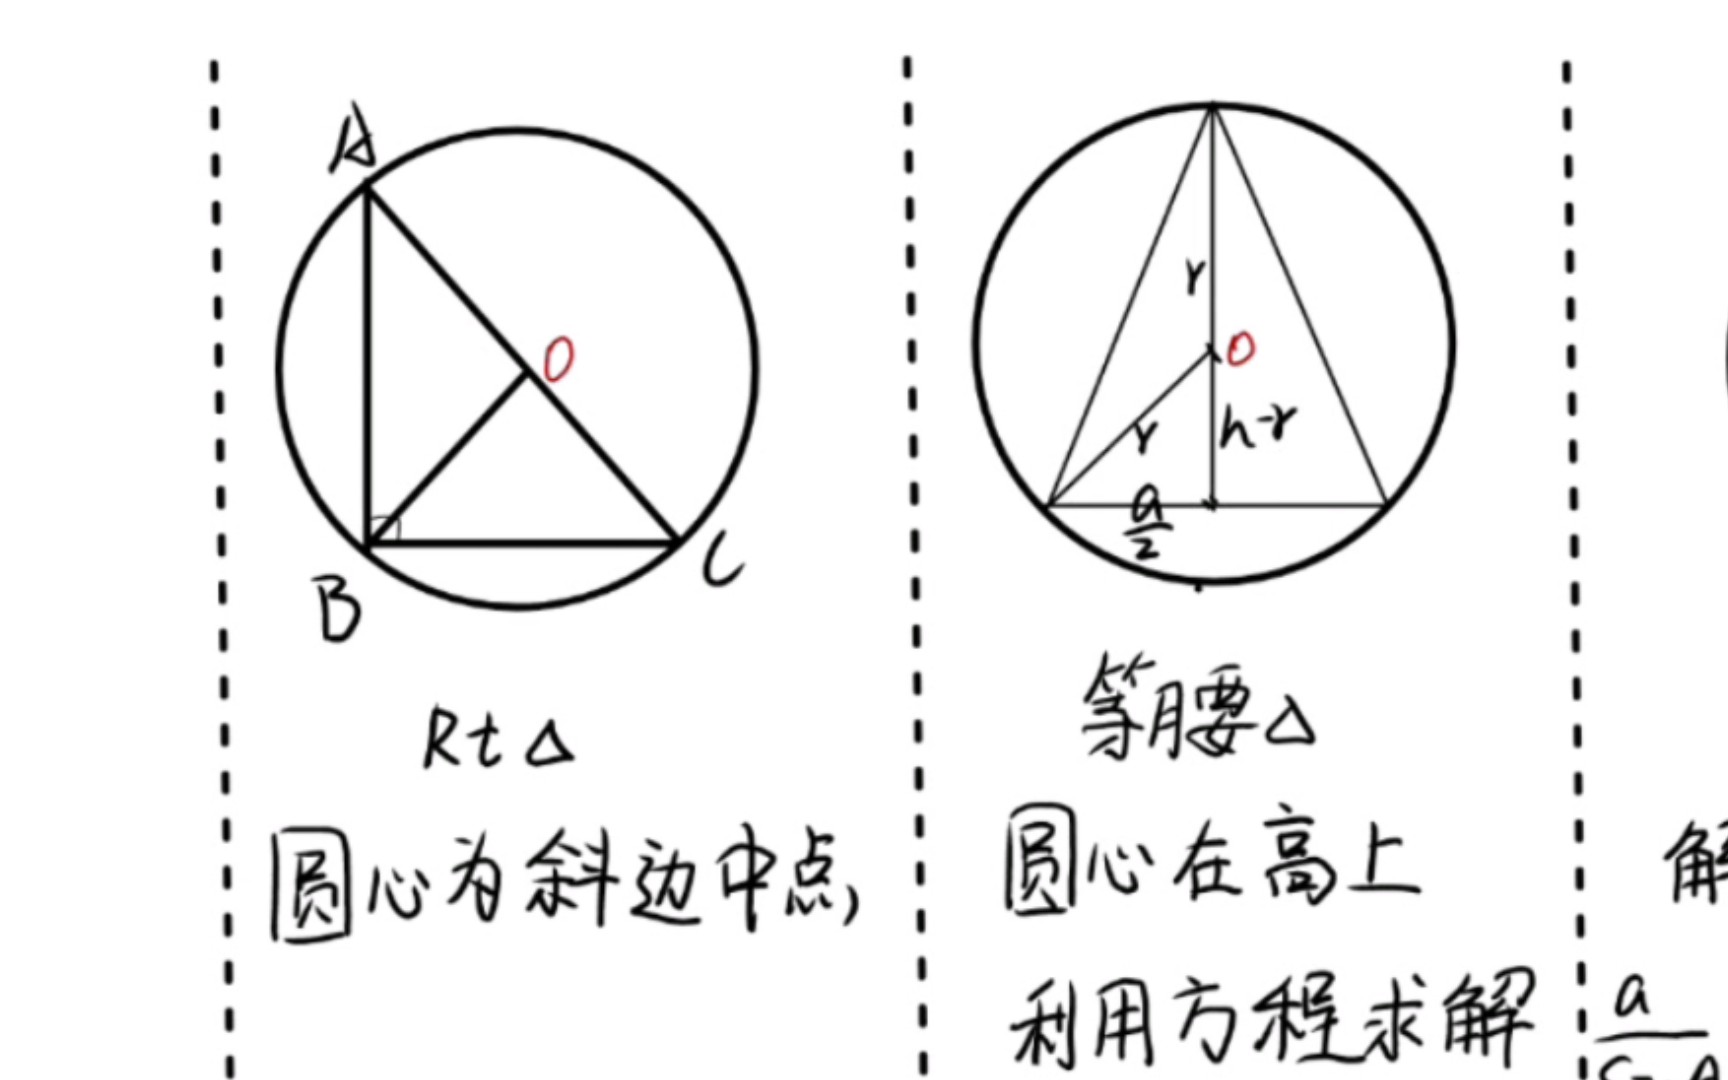 数学小课堂:轻松找到三角形的外接圆 96 原来这么简单!